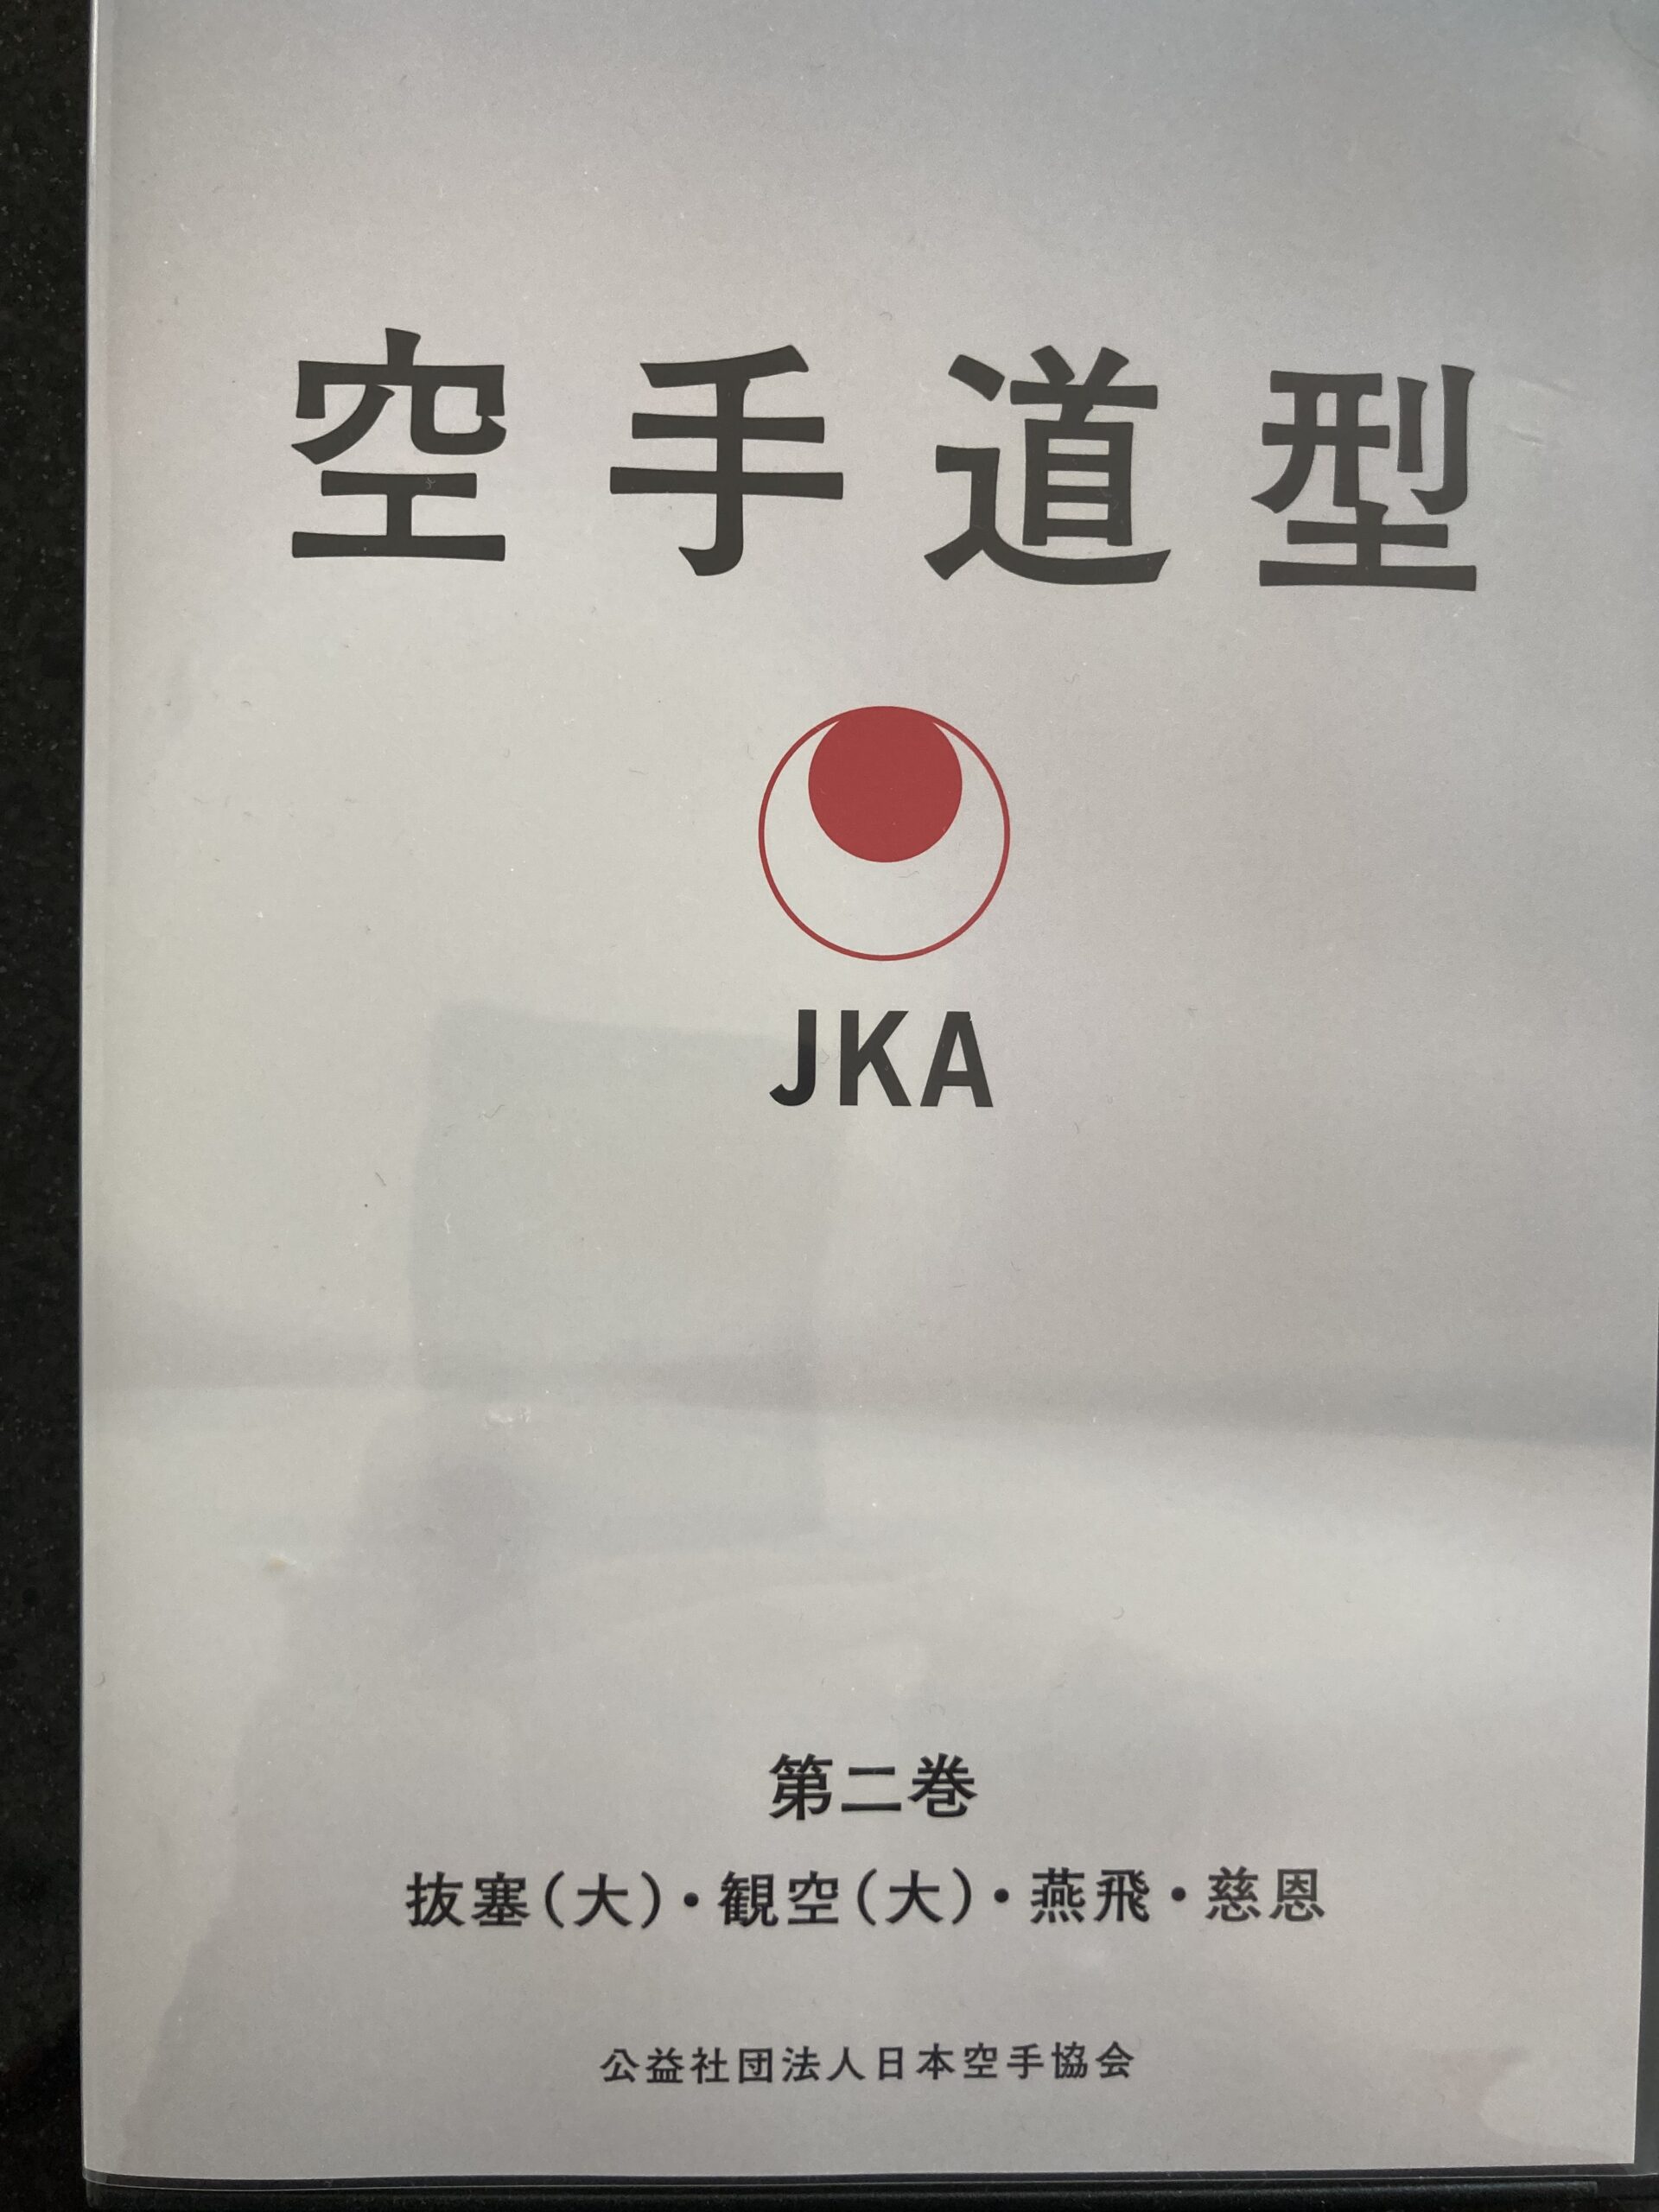 You are currently viewing JKA Kata Video und Bücher